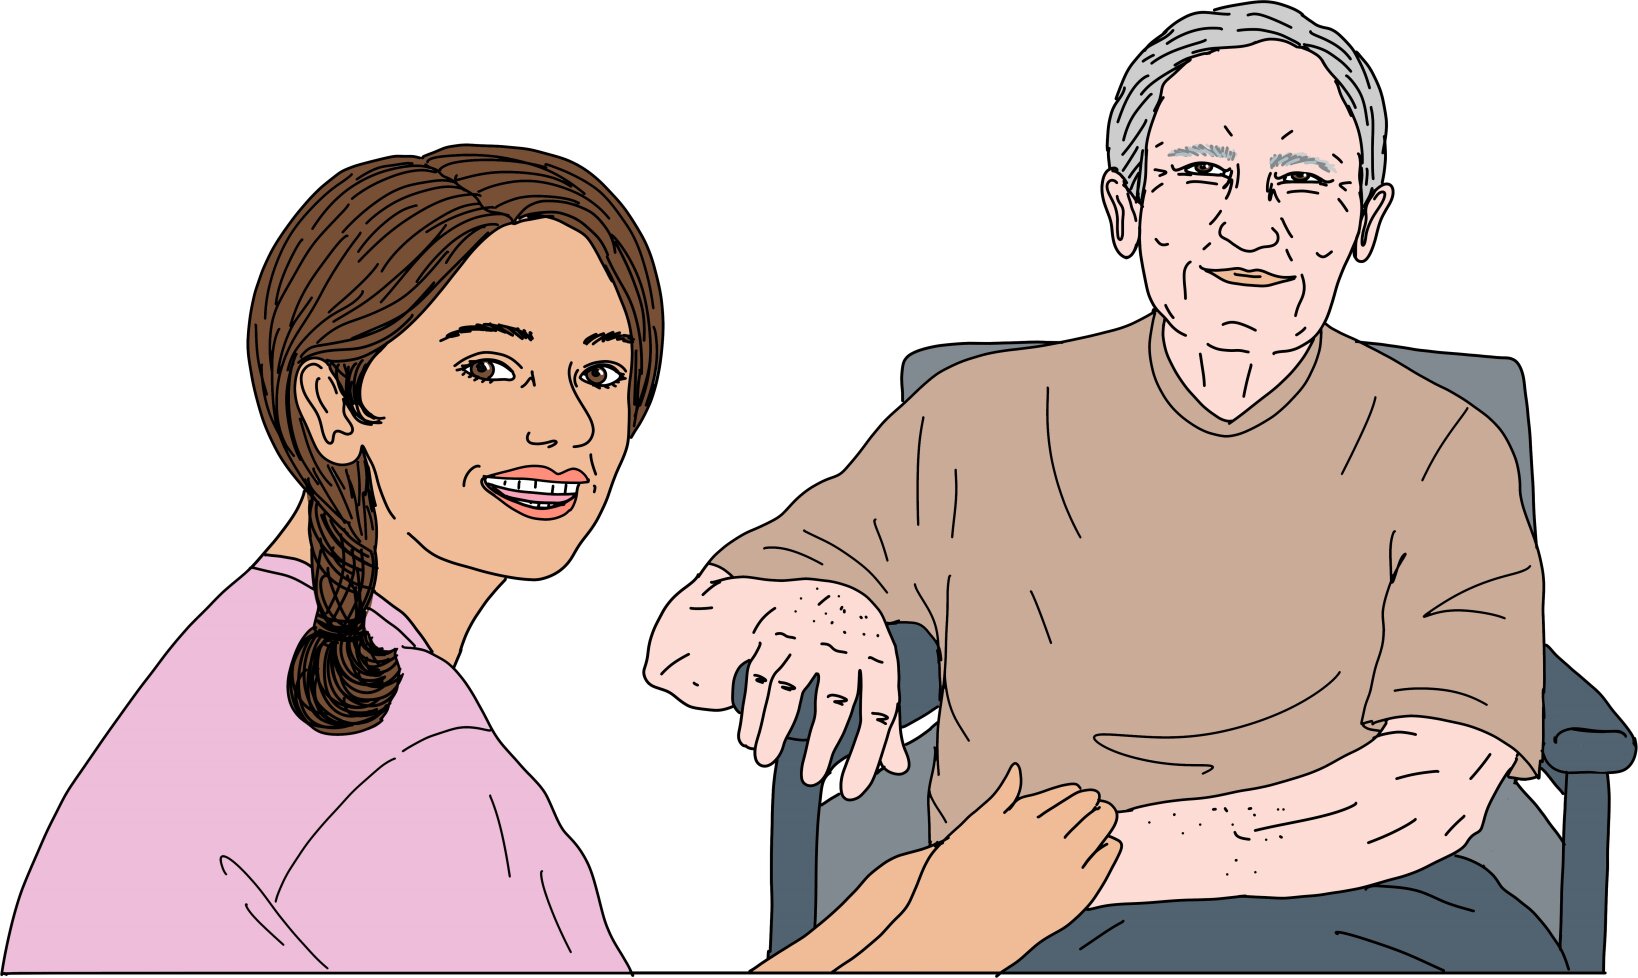 Eine jüngere Frau kniet vor einer älteren Person im Rollstuhl und hält mit beiden Händen die Hand der älteren Person fest. Beide schauen freundlich nach vorne. 